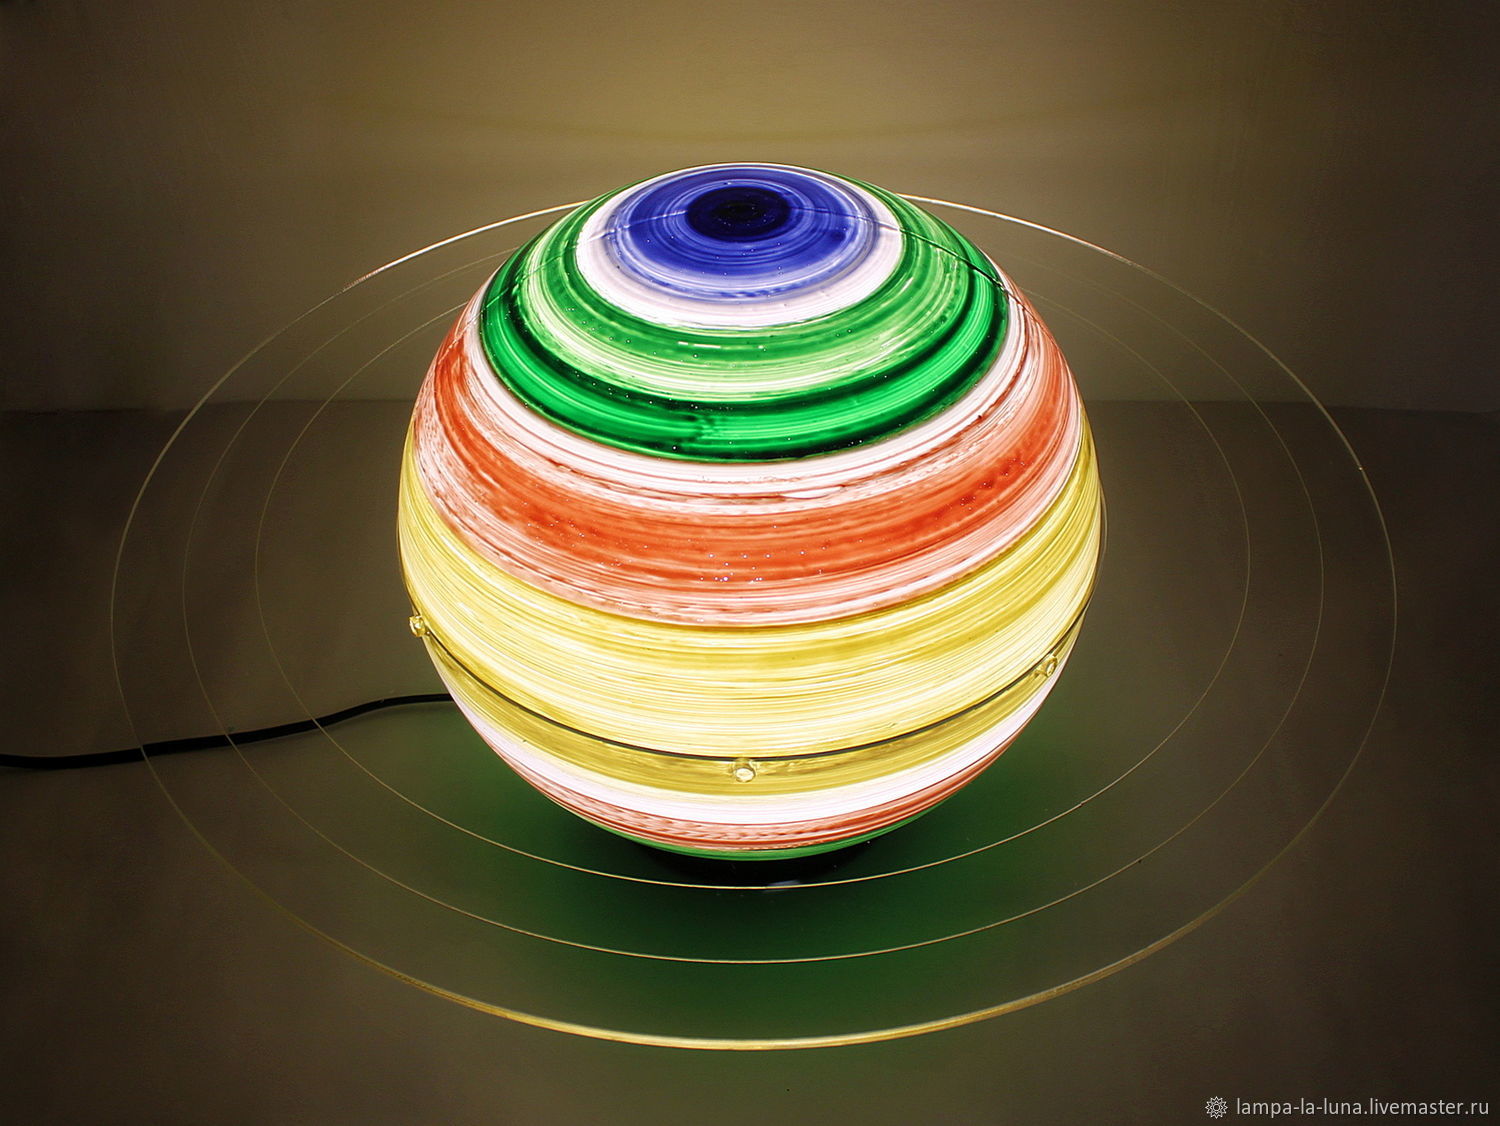 Светильник - Сатурн 25 см (светильник планета, ночник), Потолочные и подвесные светильники, Санкт-Петербург,  Фото №1